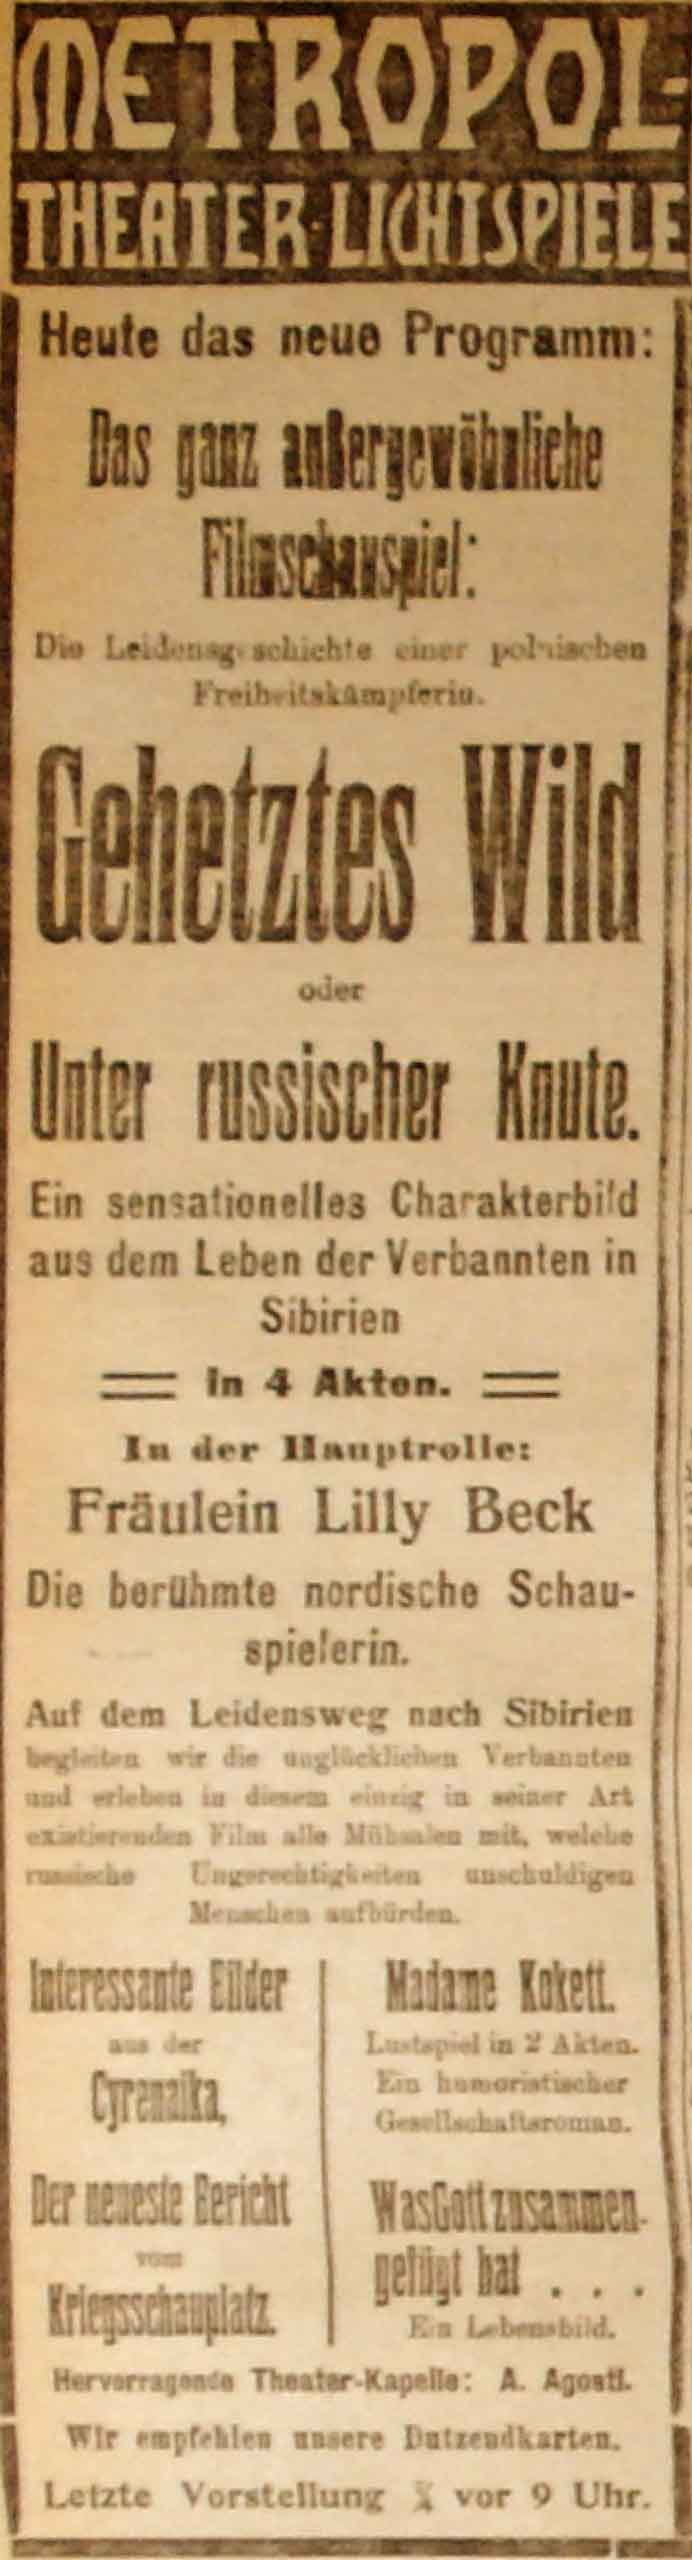 Anzeige in der Deutschen Reichs-Zeitung vom 20. Januar 1915